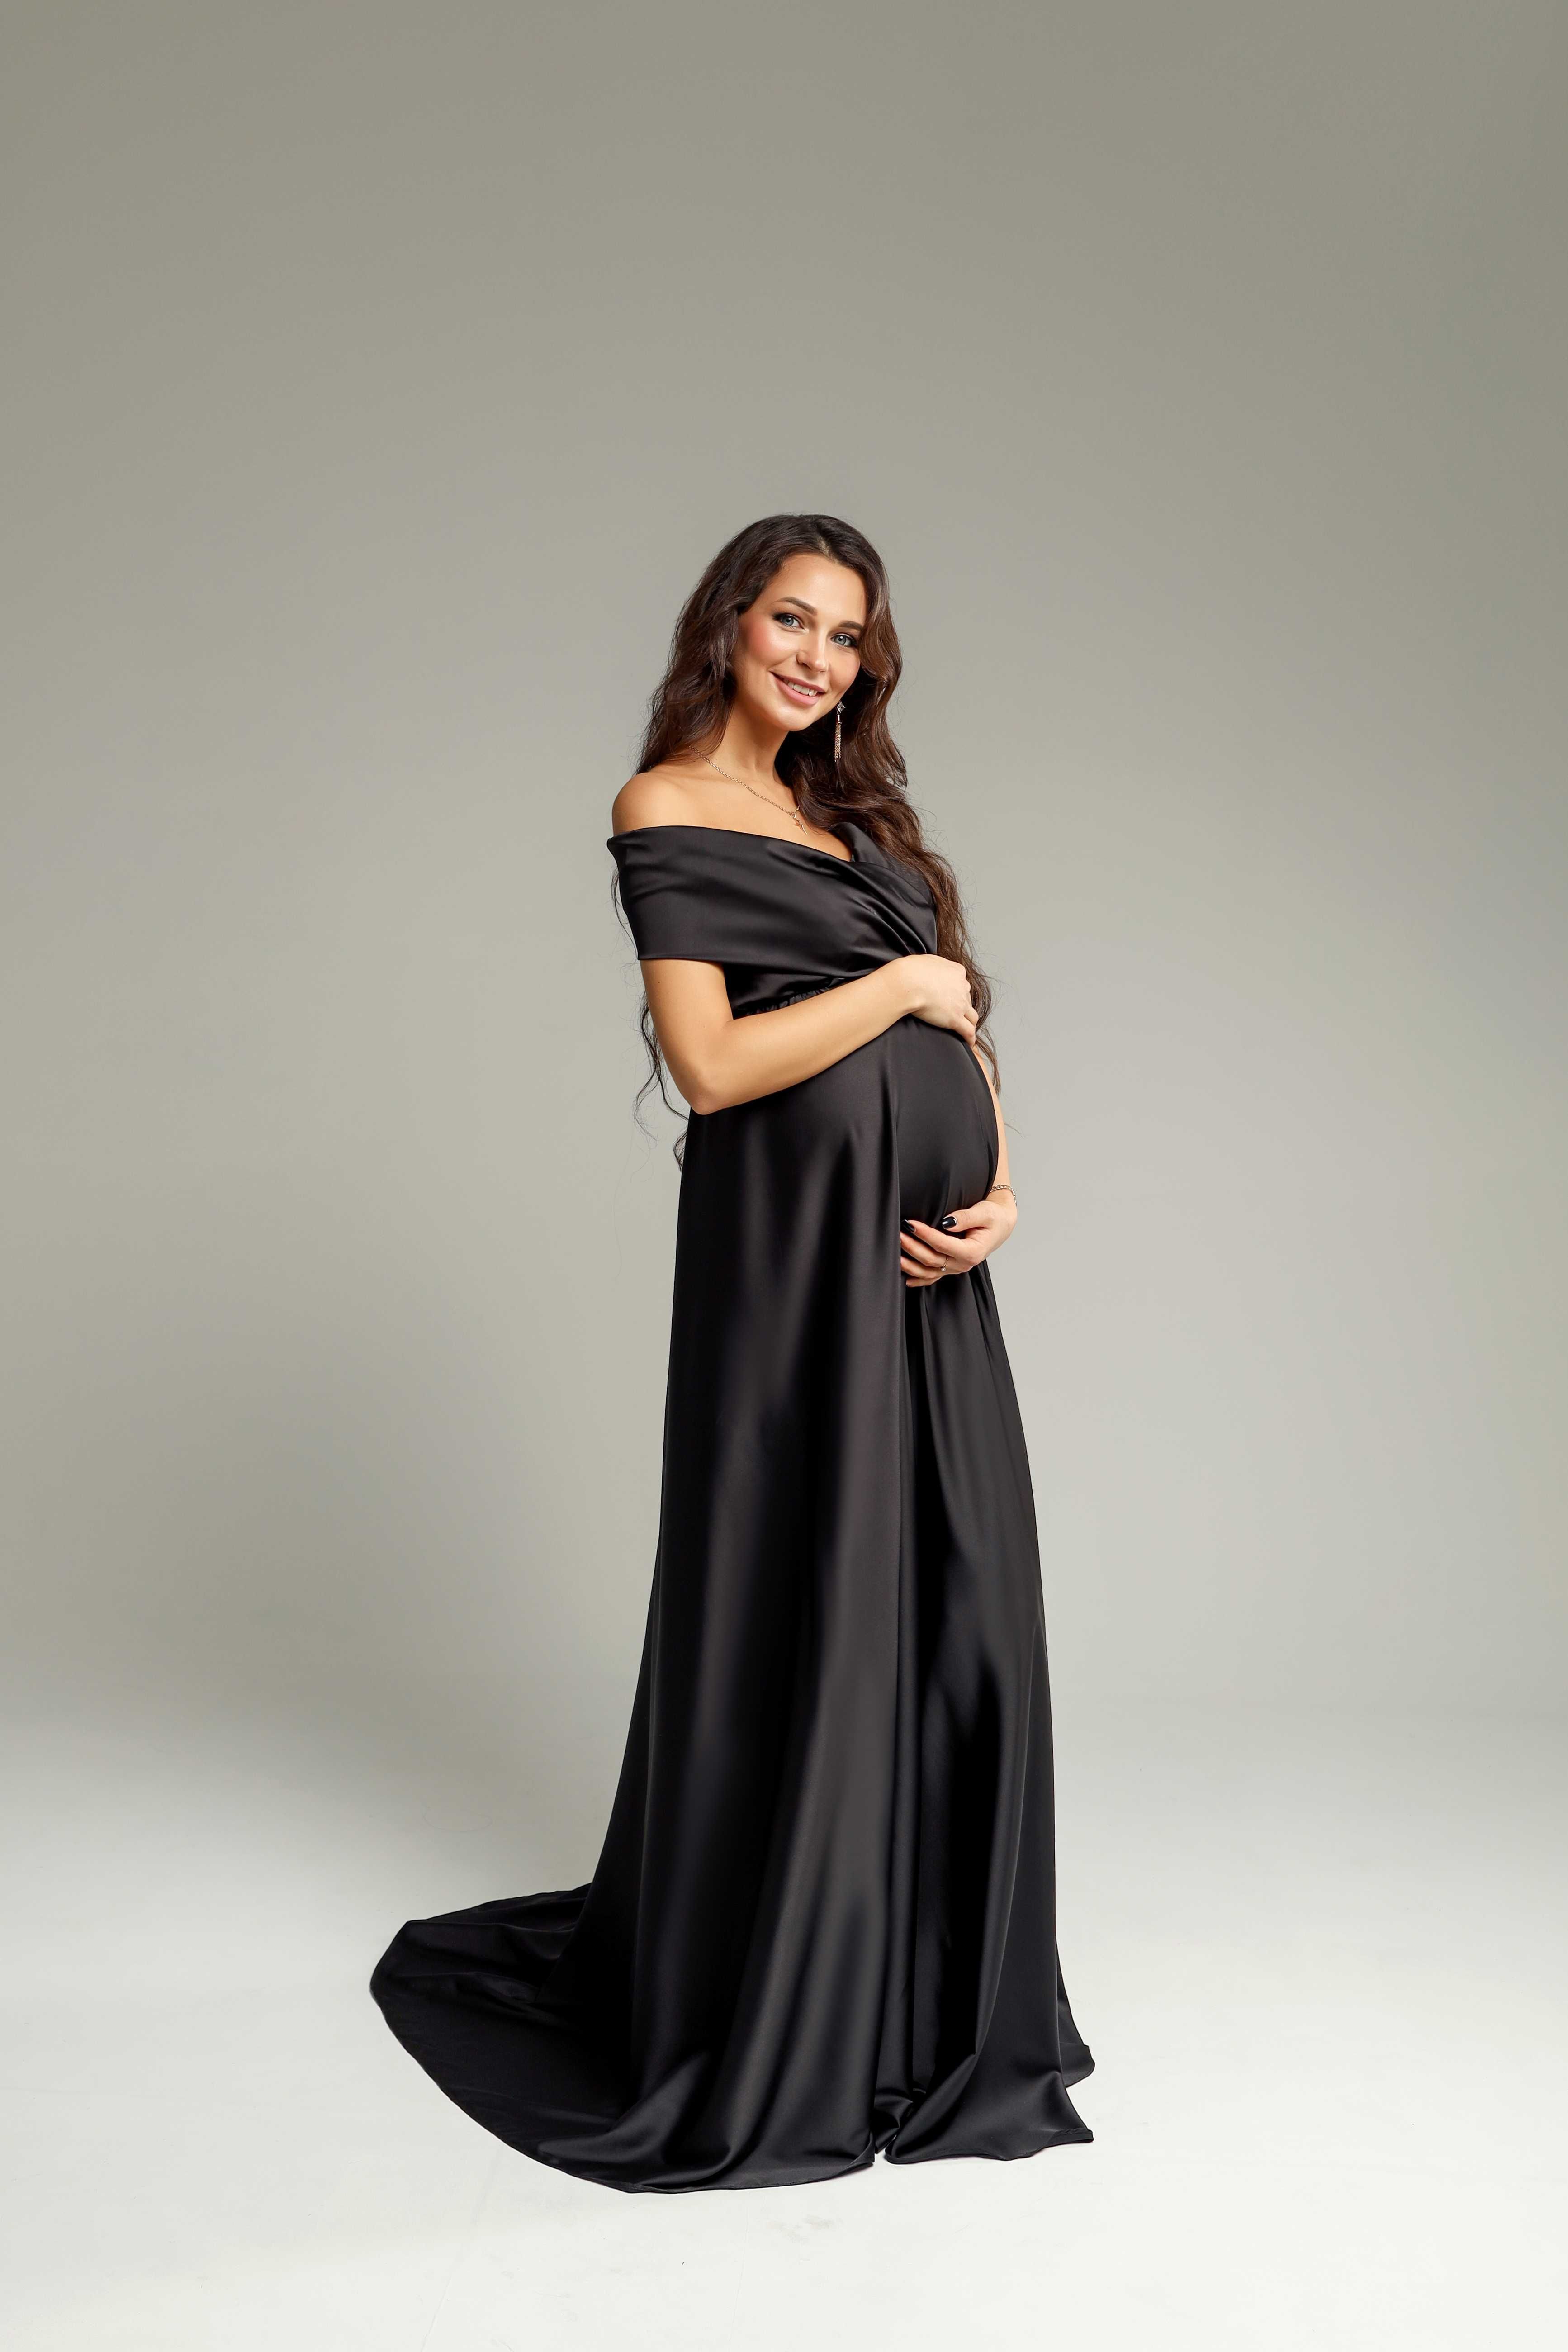 Платье для фотосессии беременной. Праздничное платье для беременной.